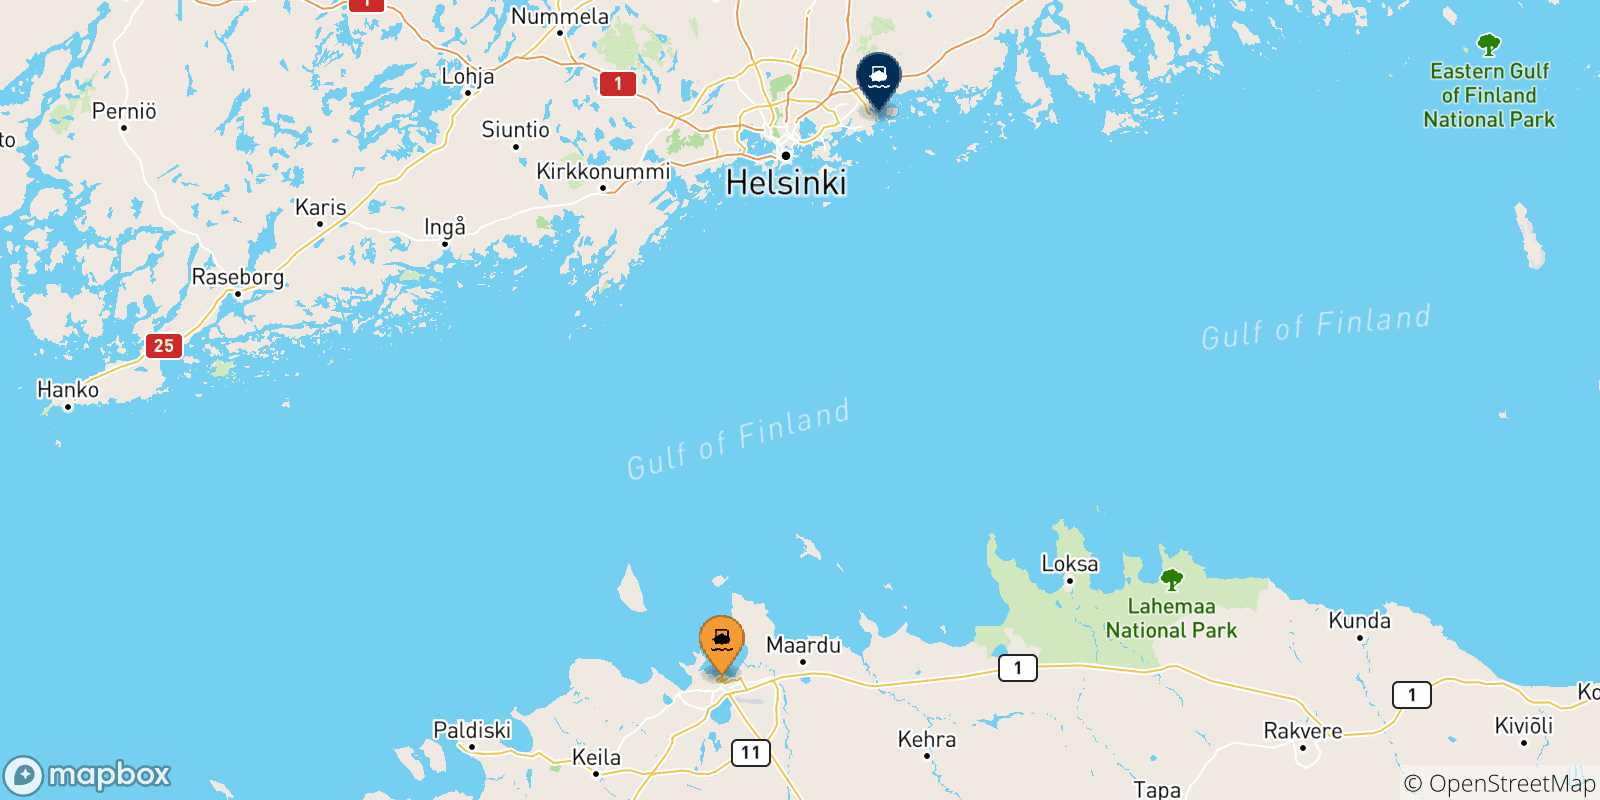 Mappa delle possibili rotte tra l'Estonia e Helsinki